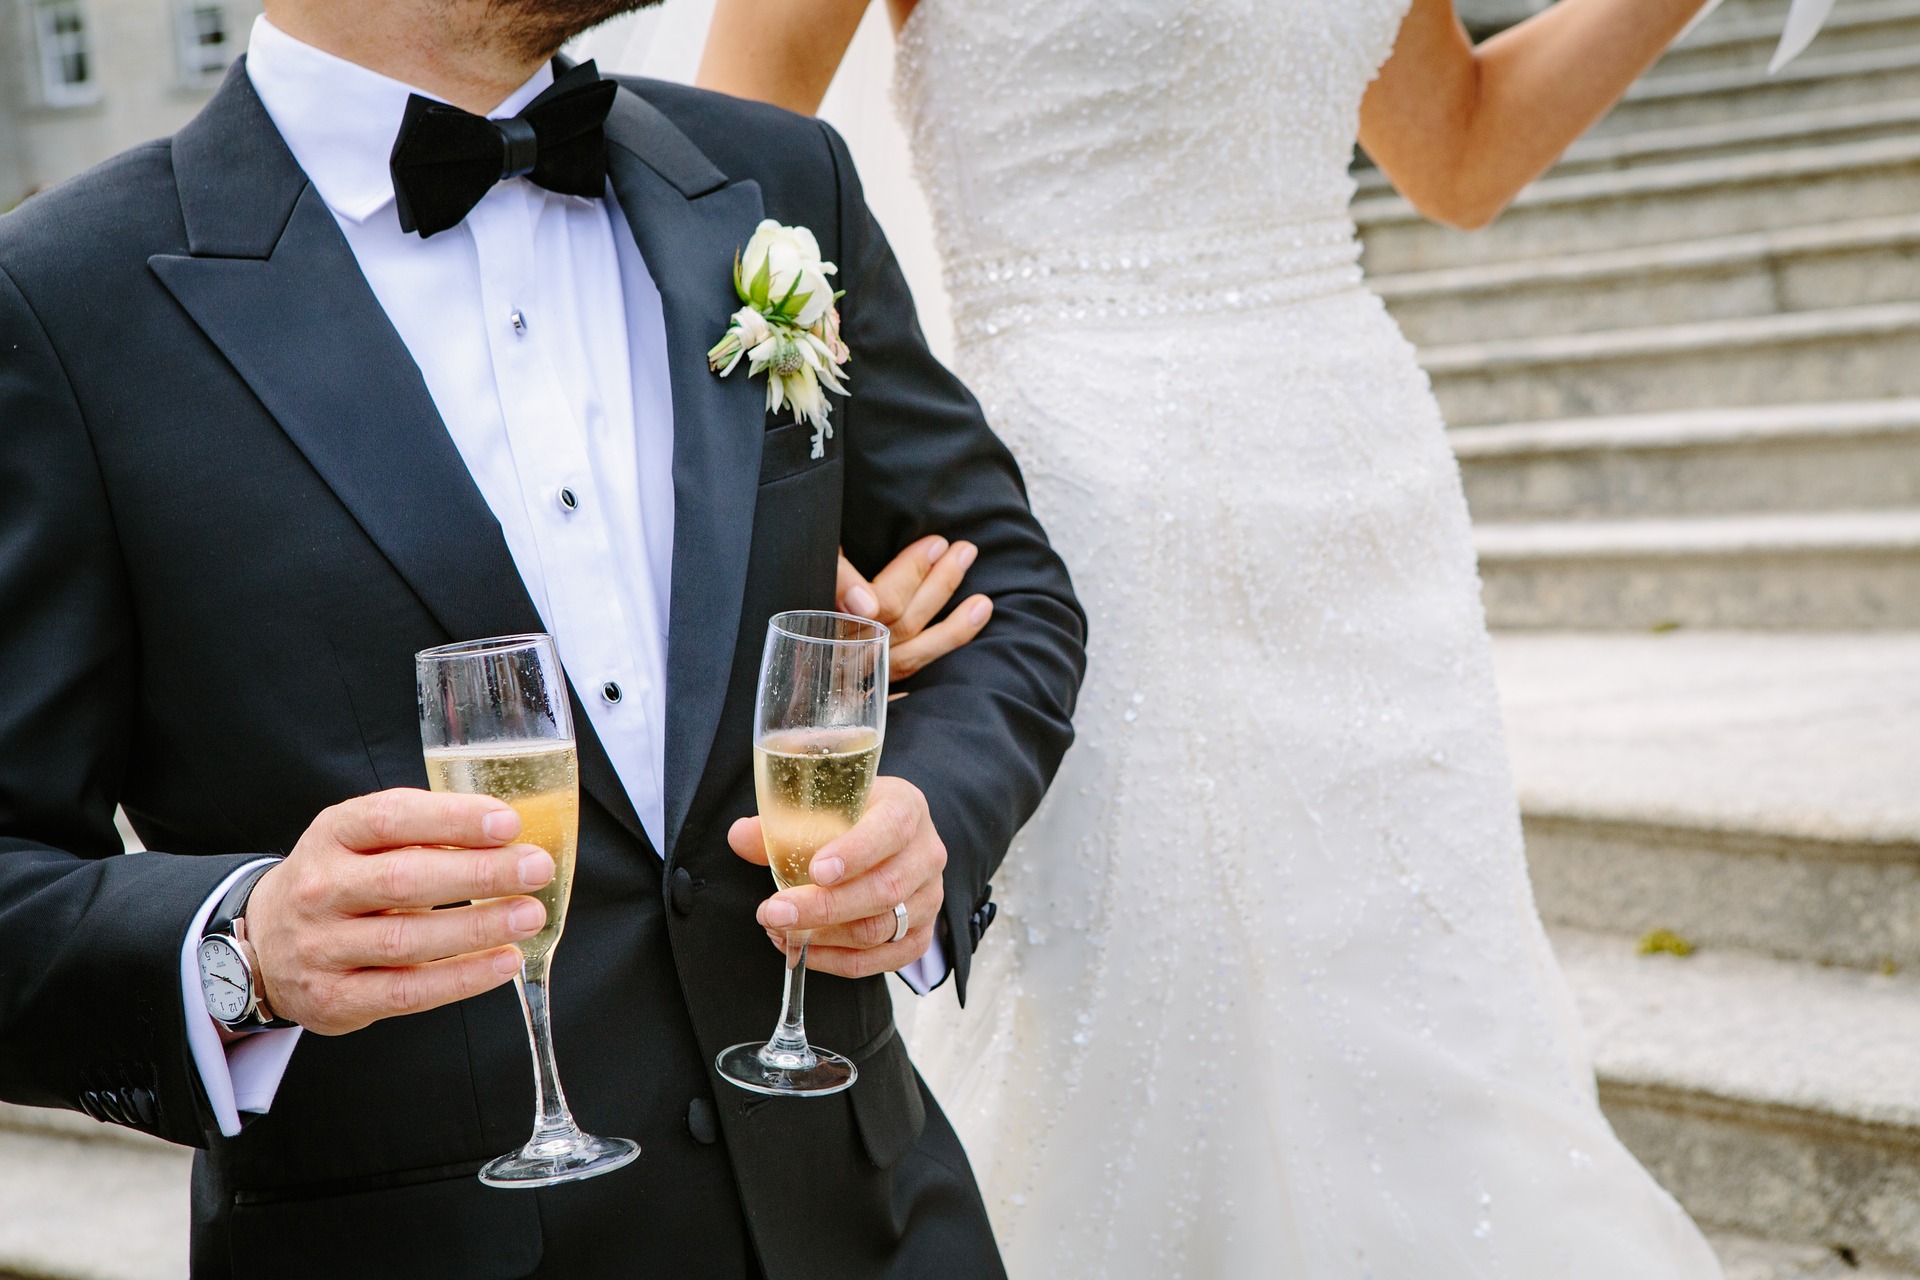 Тула вошла в ТОП-10 самых дорогих городов для проведения свадеб